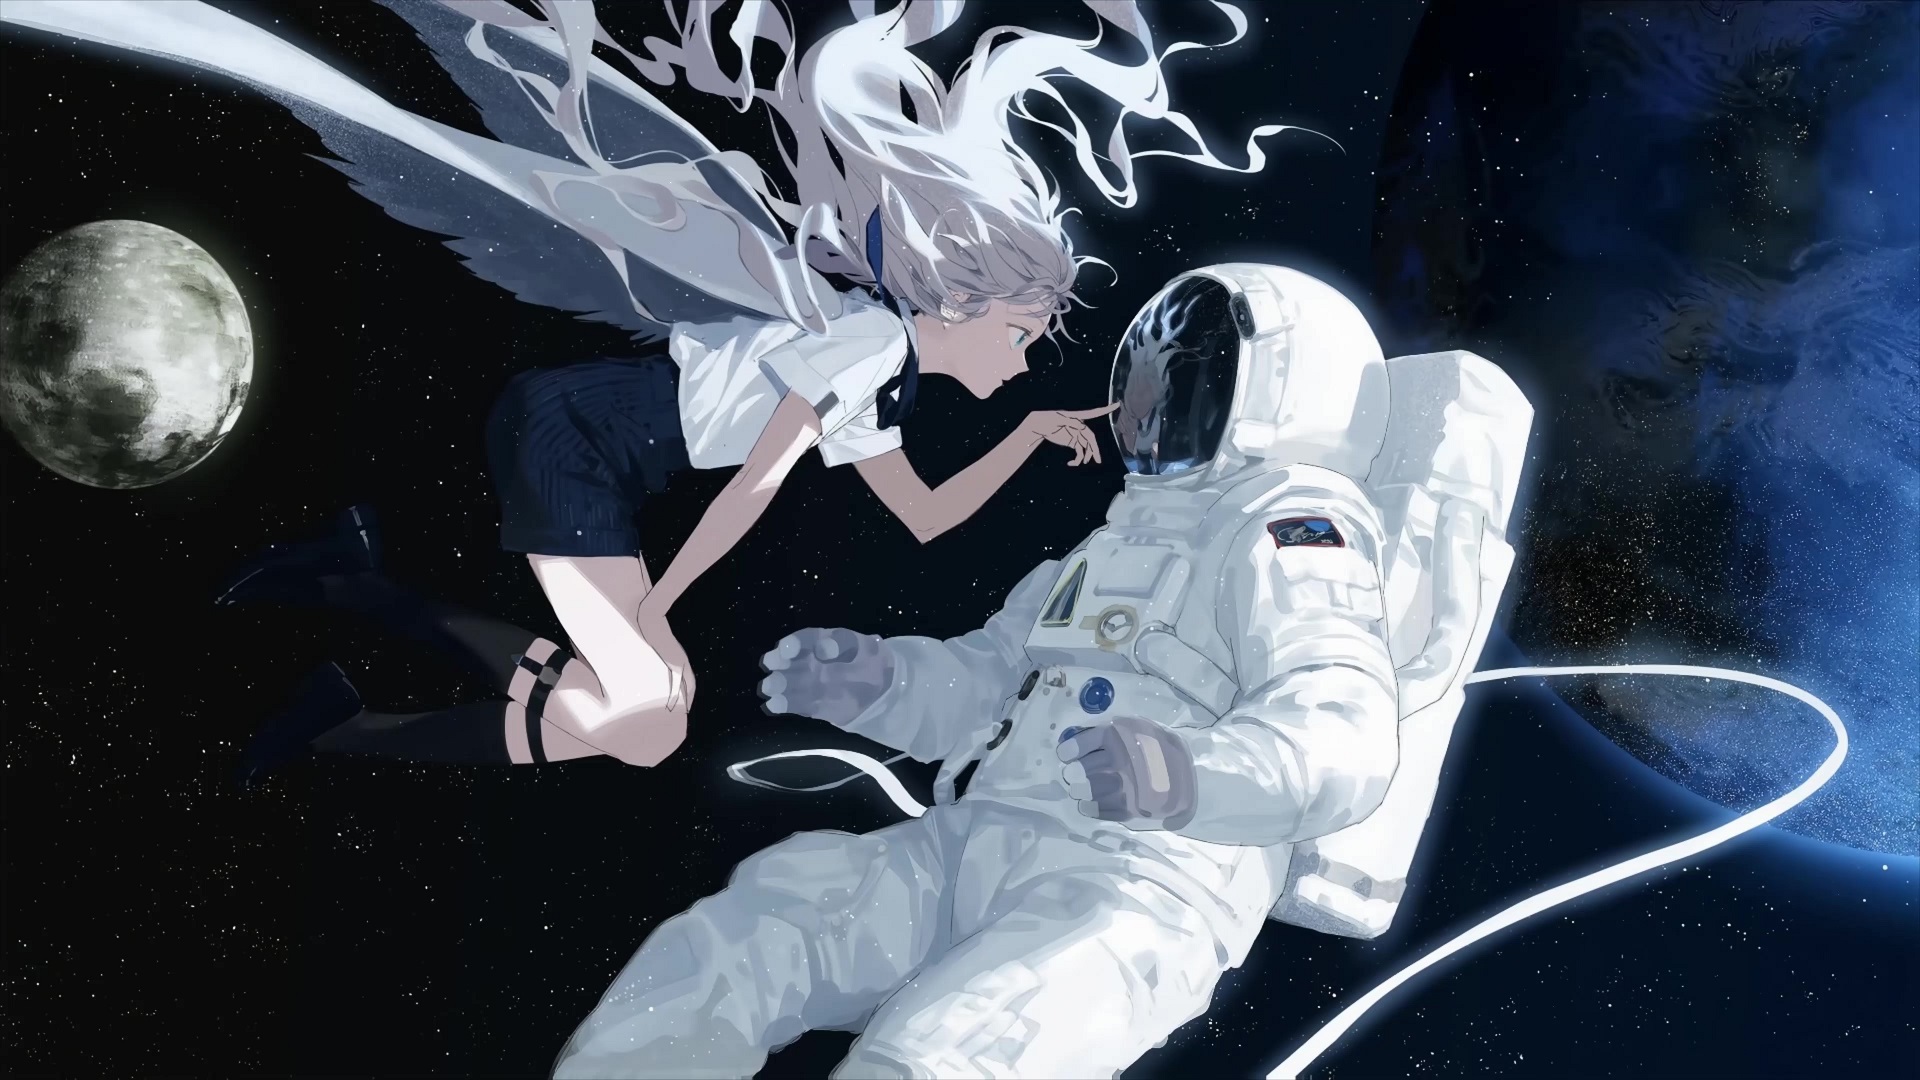 Anime astronaut by KittleSkittles on DeviantArt